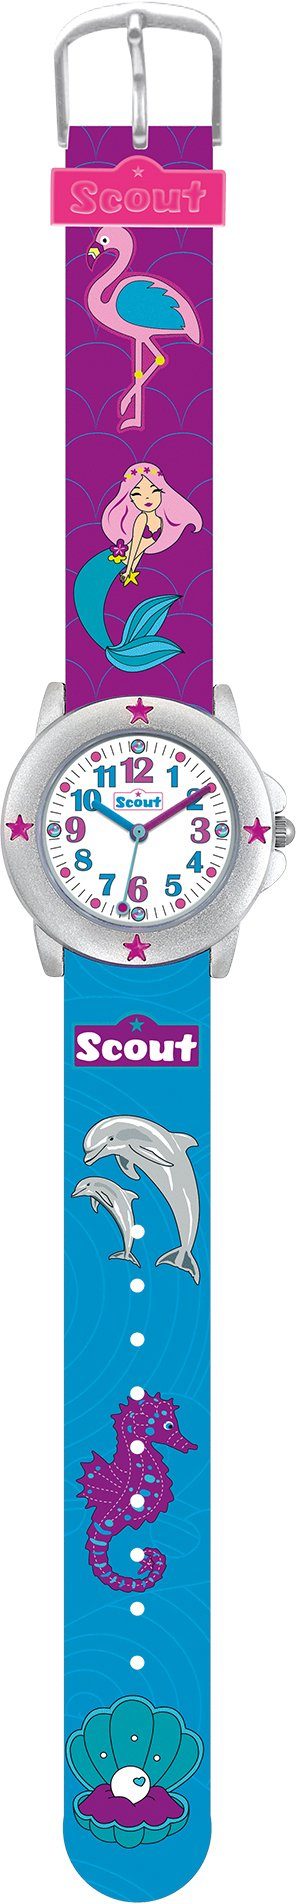 280393023, ideal Quarzuhr Muschel-Delphin-,Meerjungfraumotiv, Kids, auch Scout Geschenk als Star